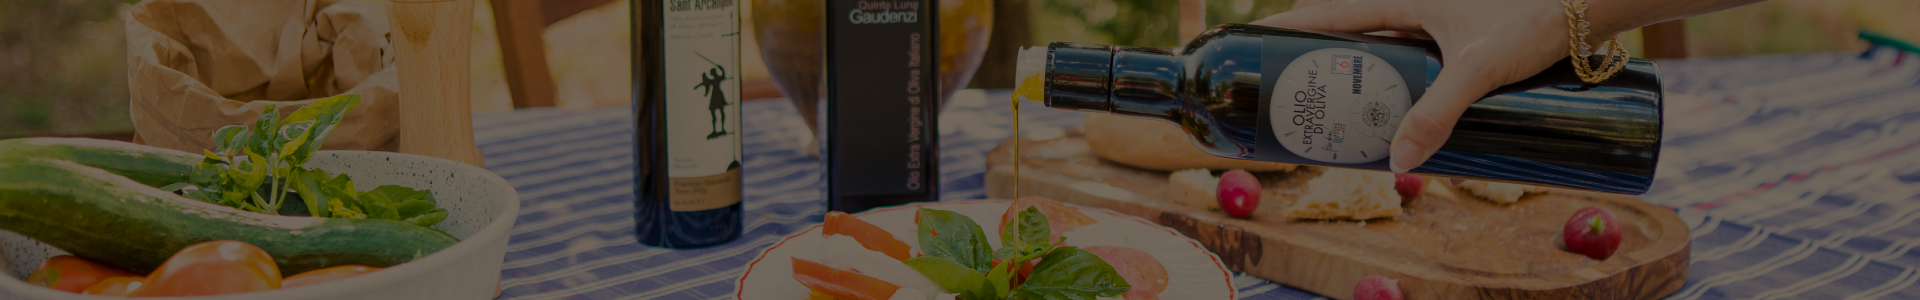 Gaudenzi Oil Mill - Extra Virgin Olive Oil Sales